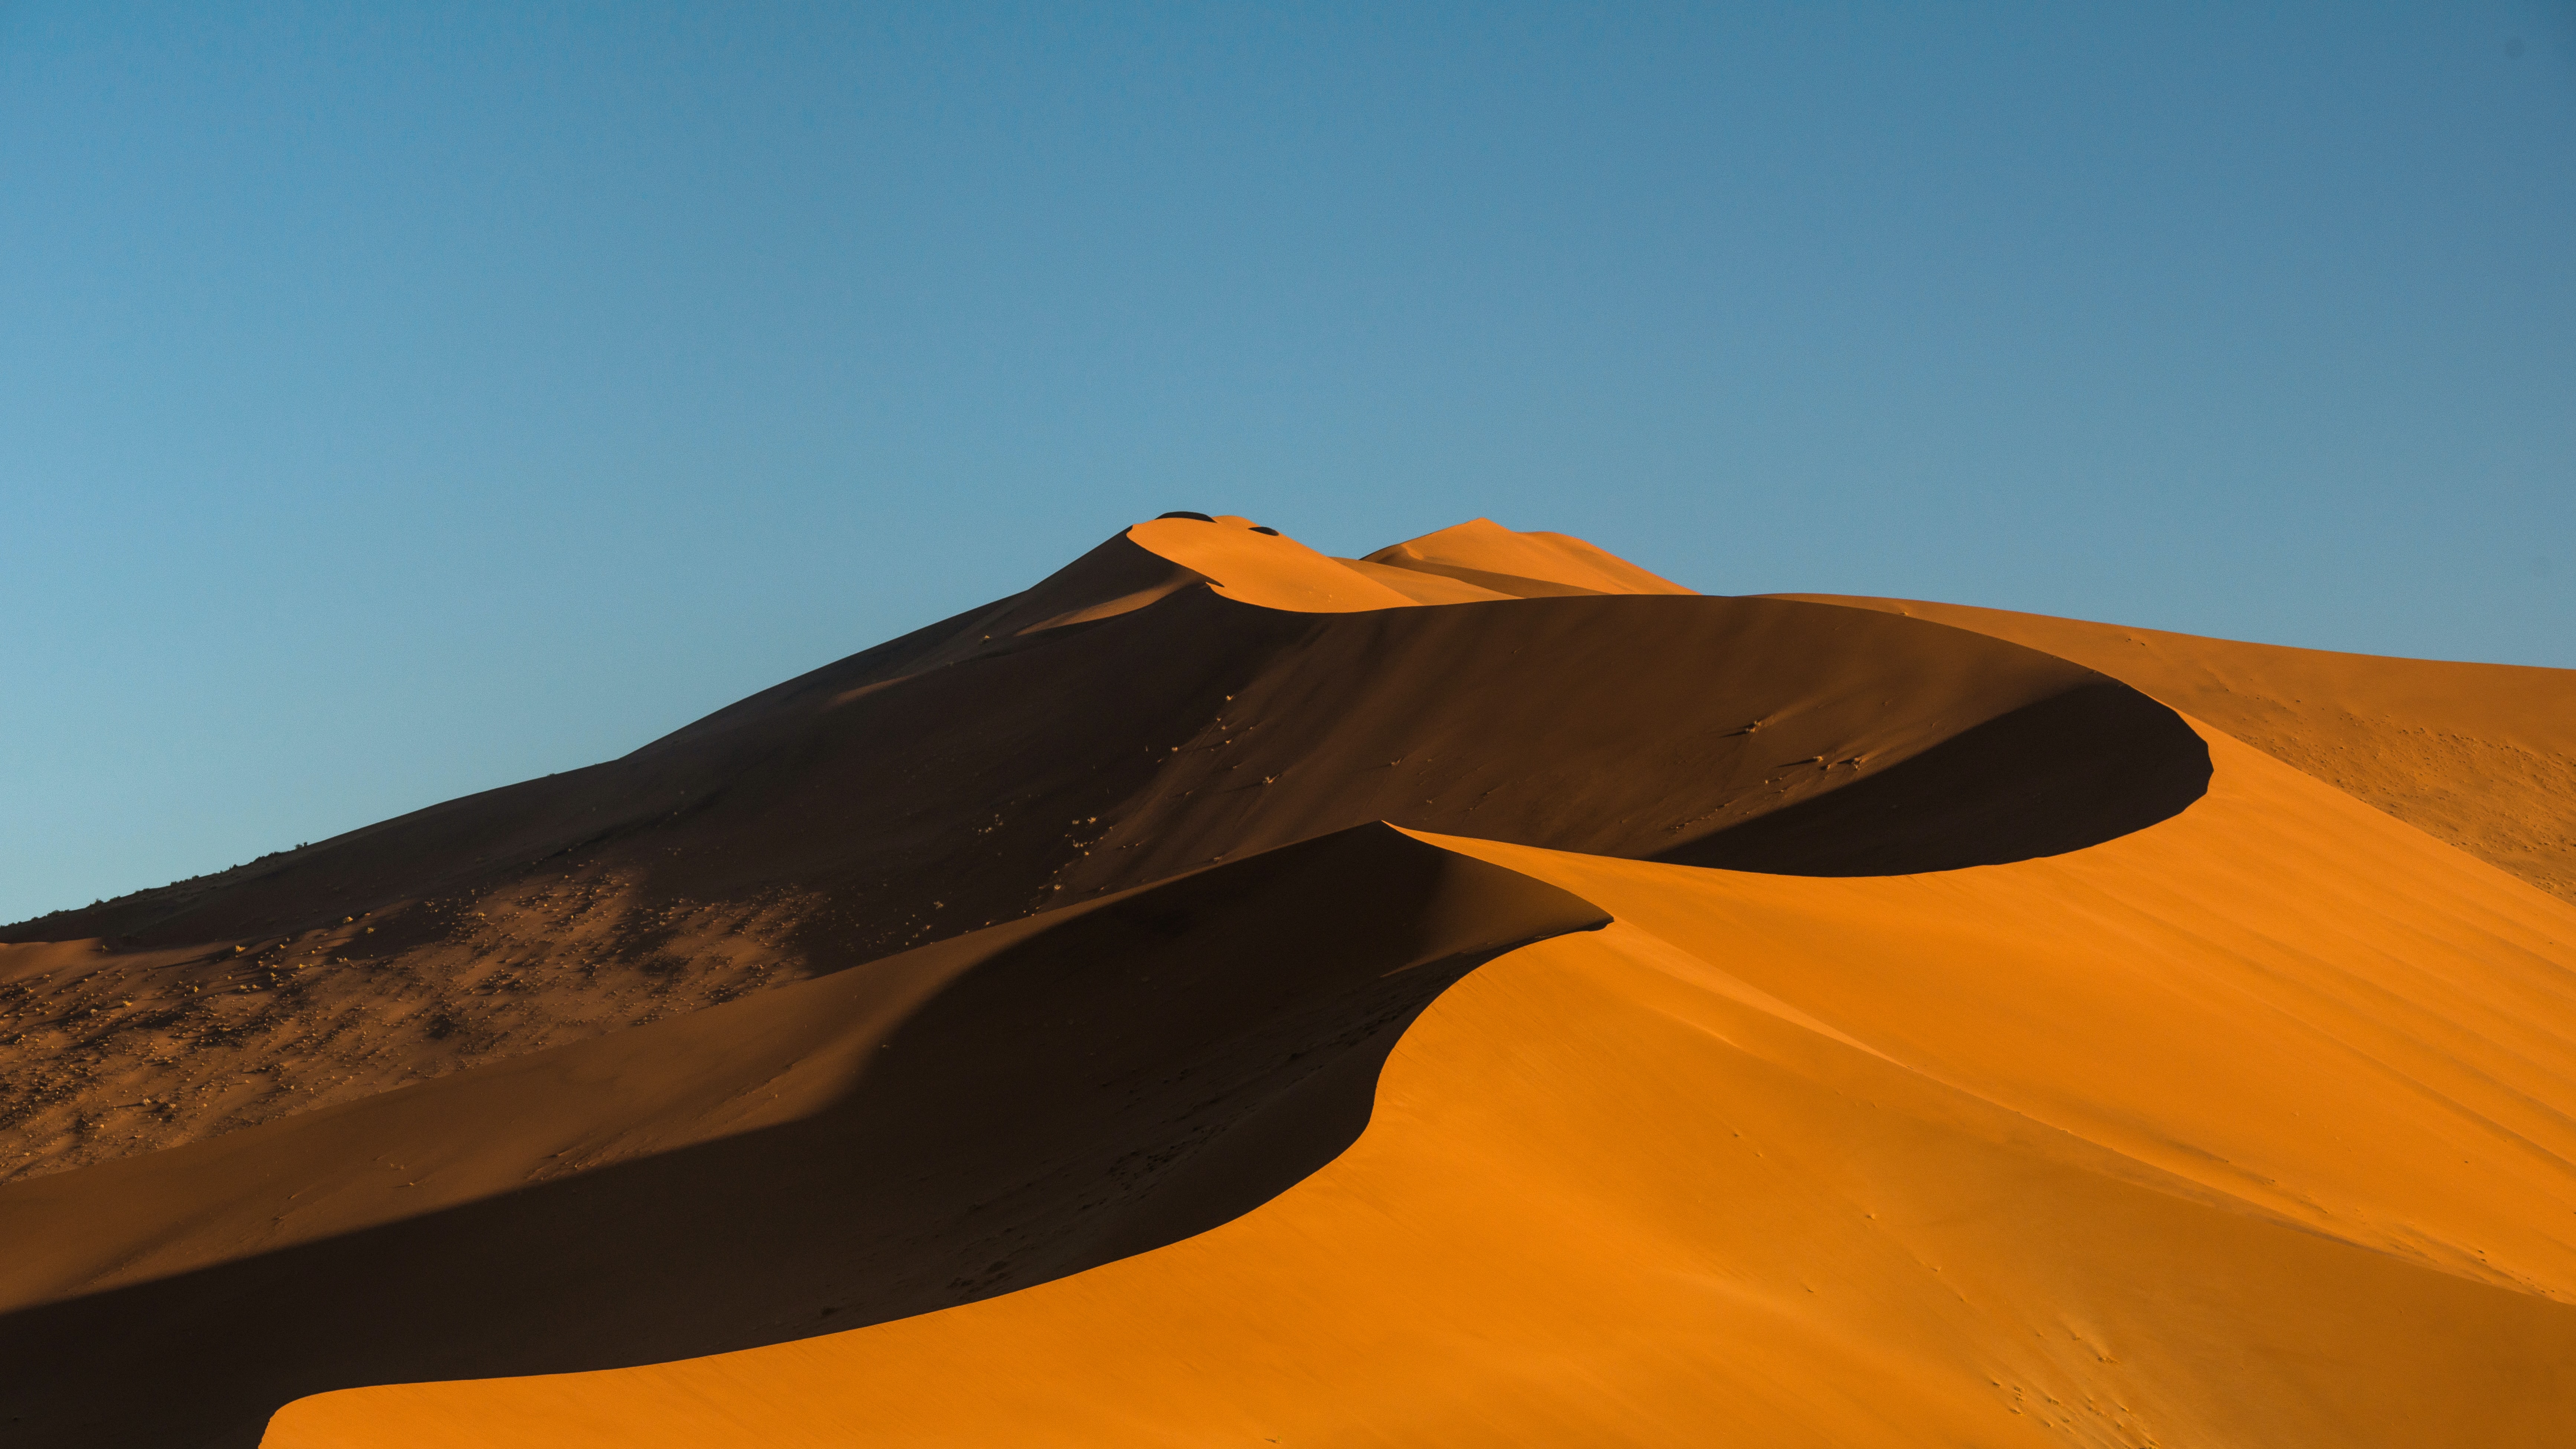 Скачать обои Пустыня Намиб на телефон бесплатно